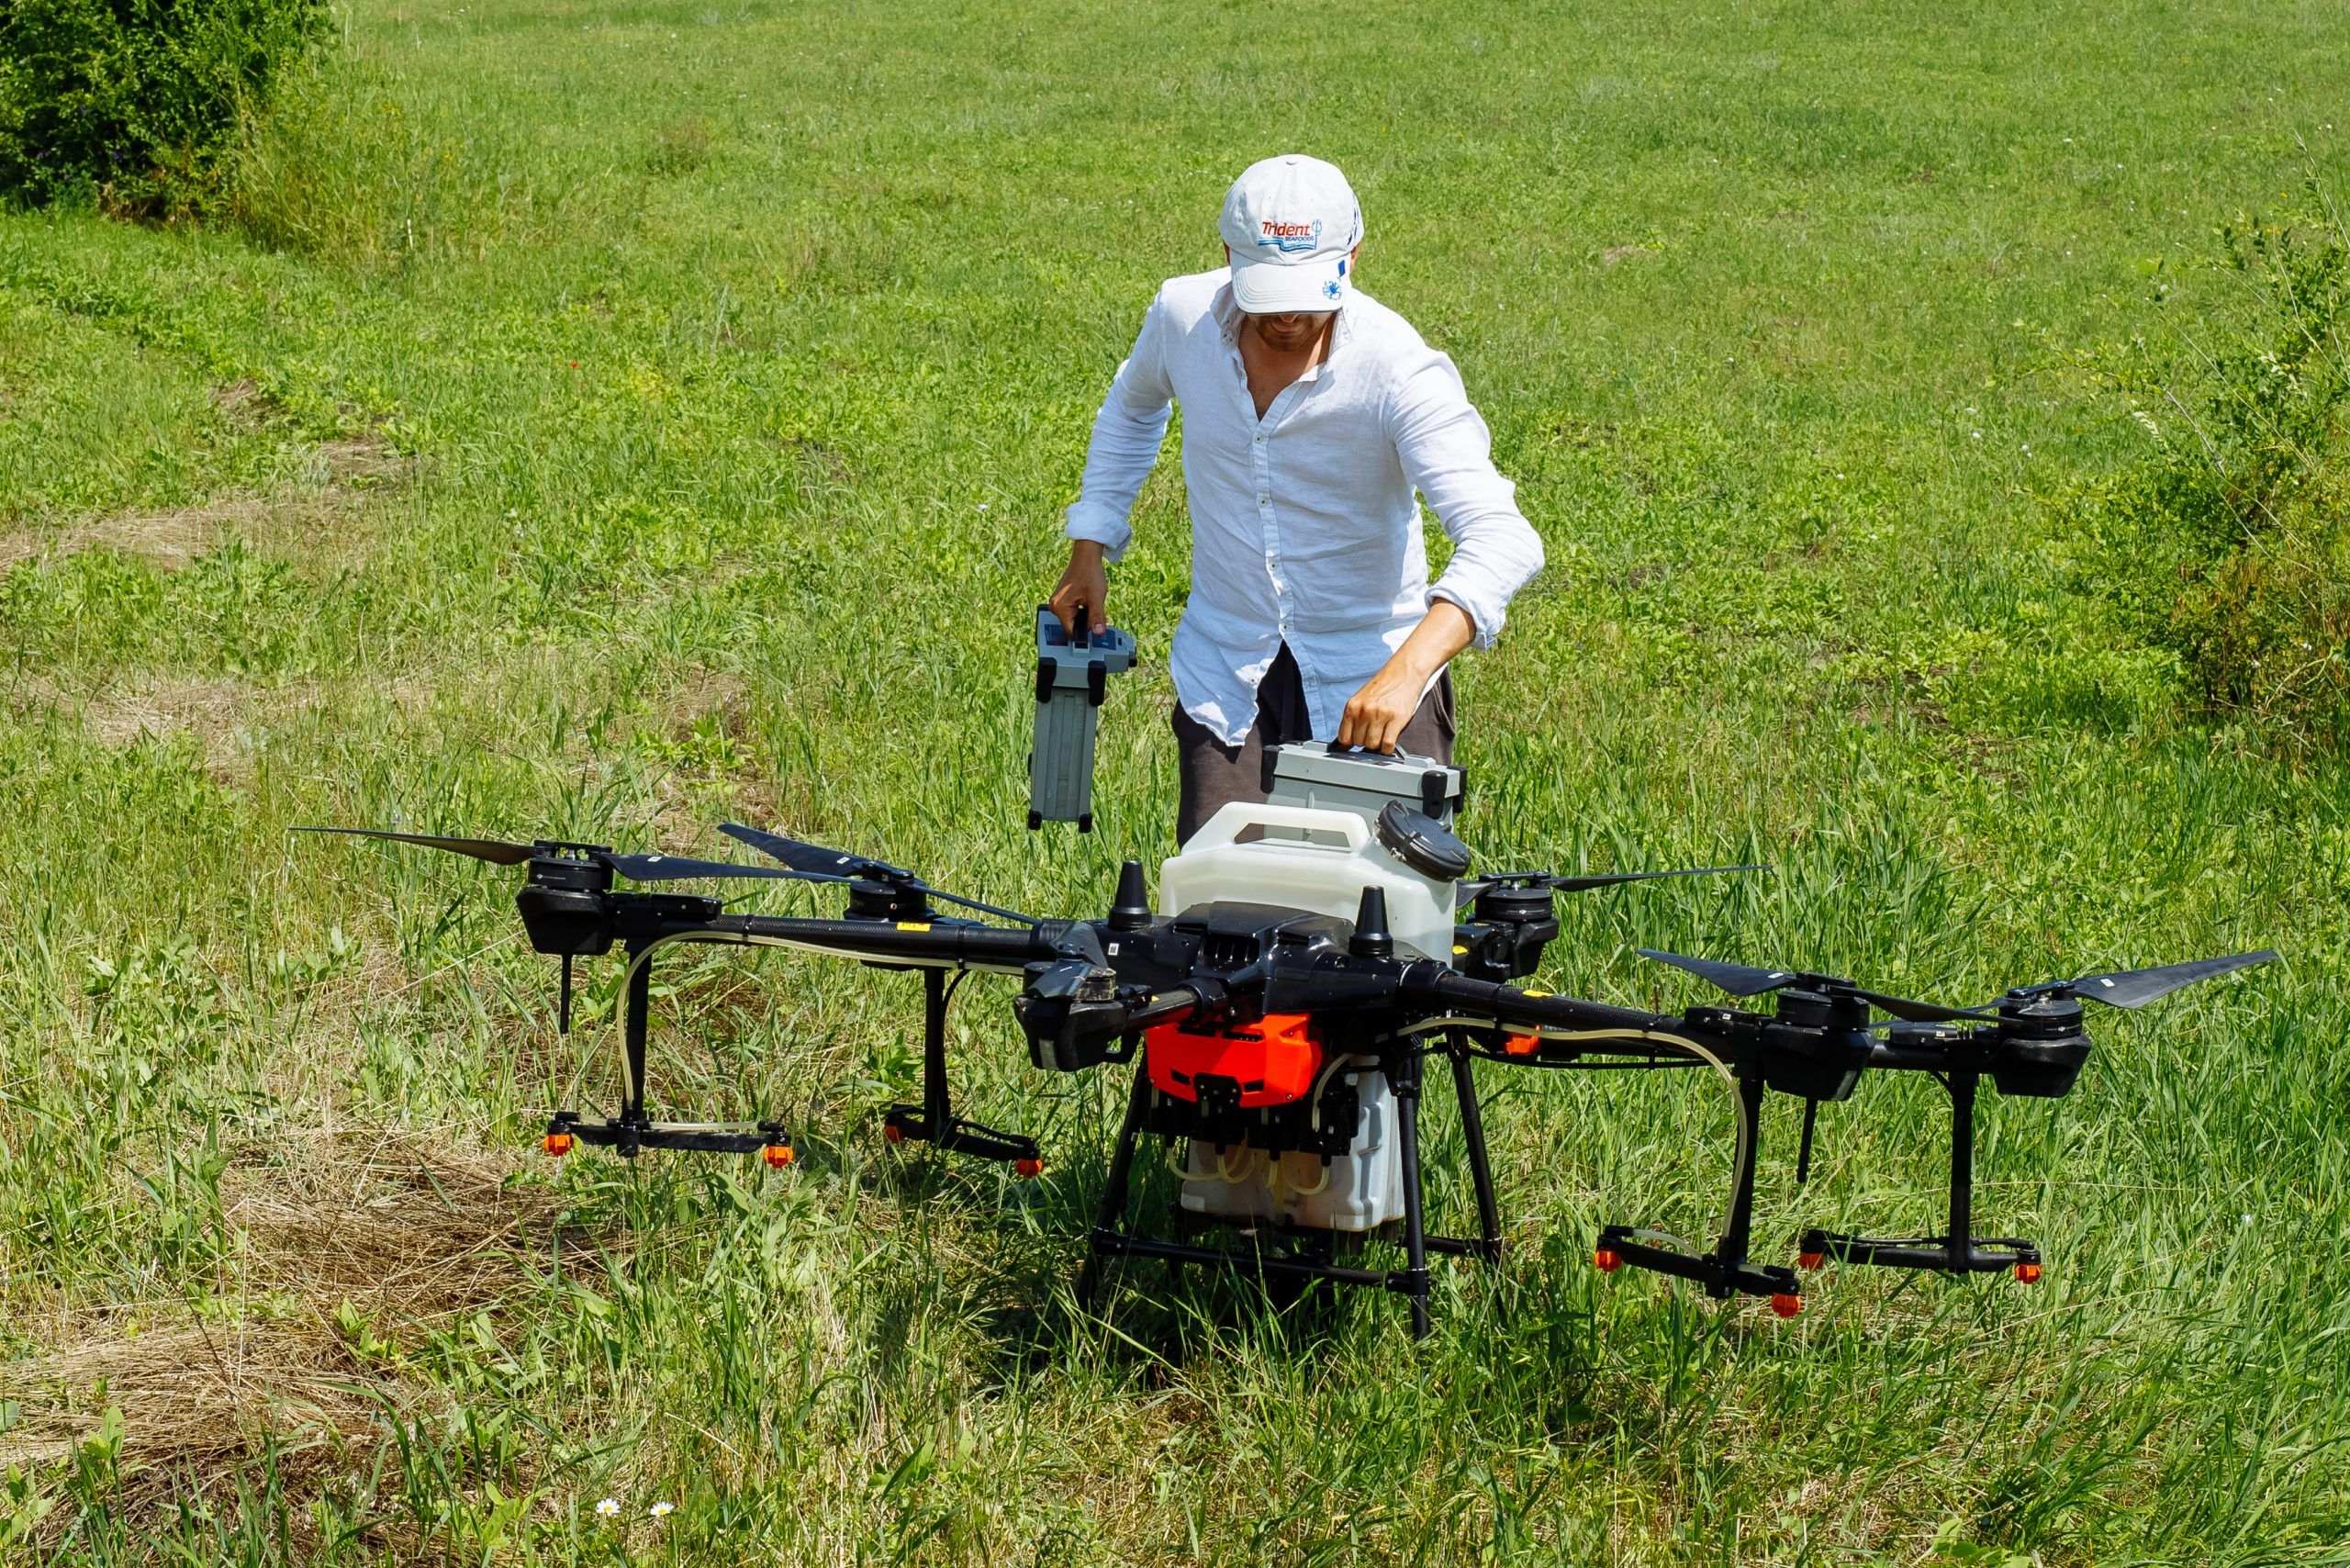 dronă agriclutură pulverizare - AgroExpert.md